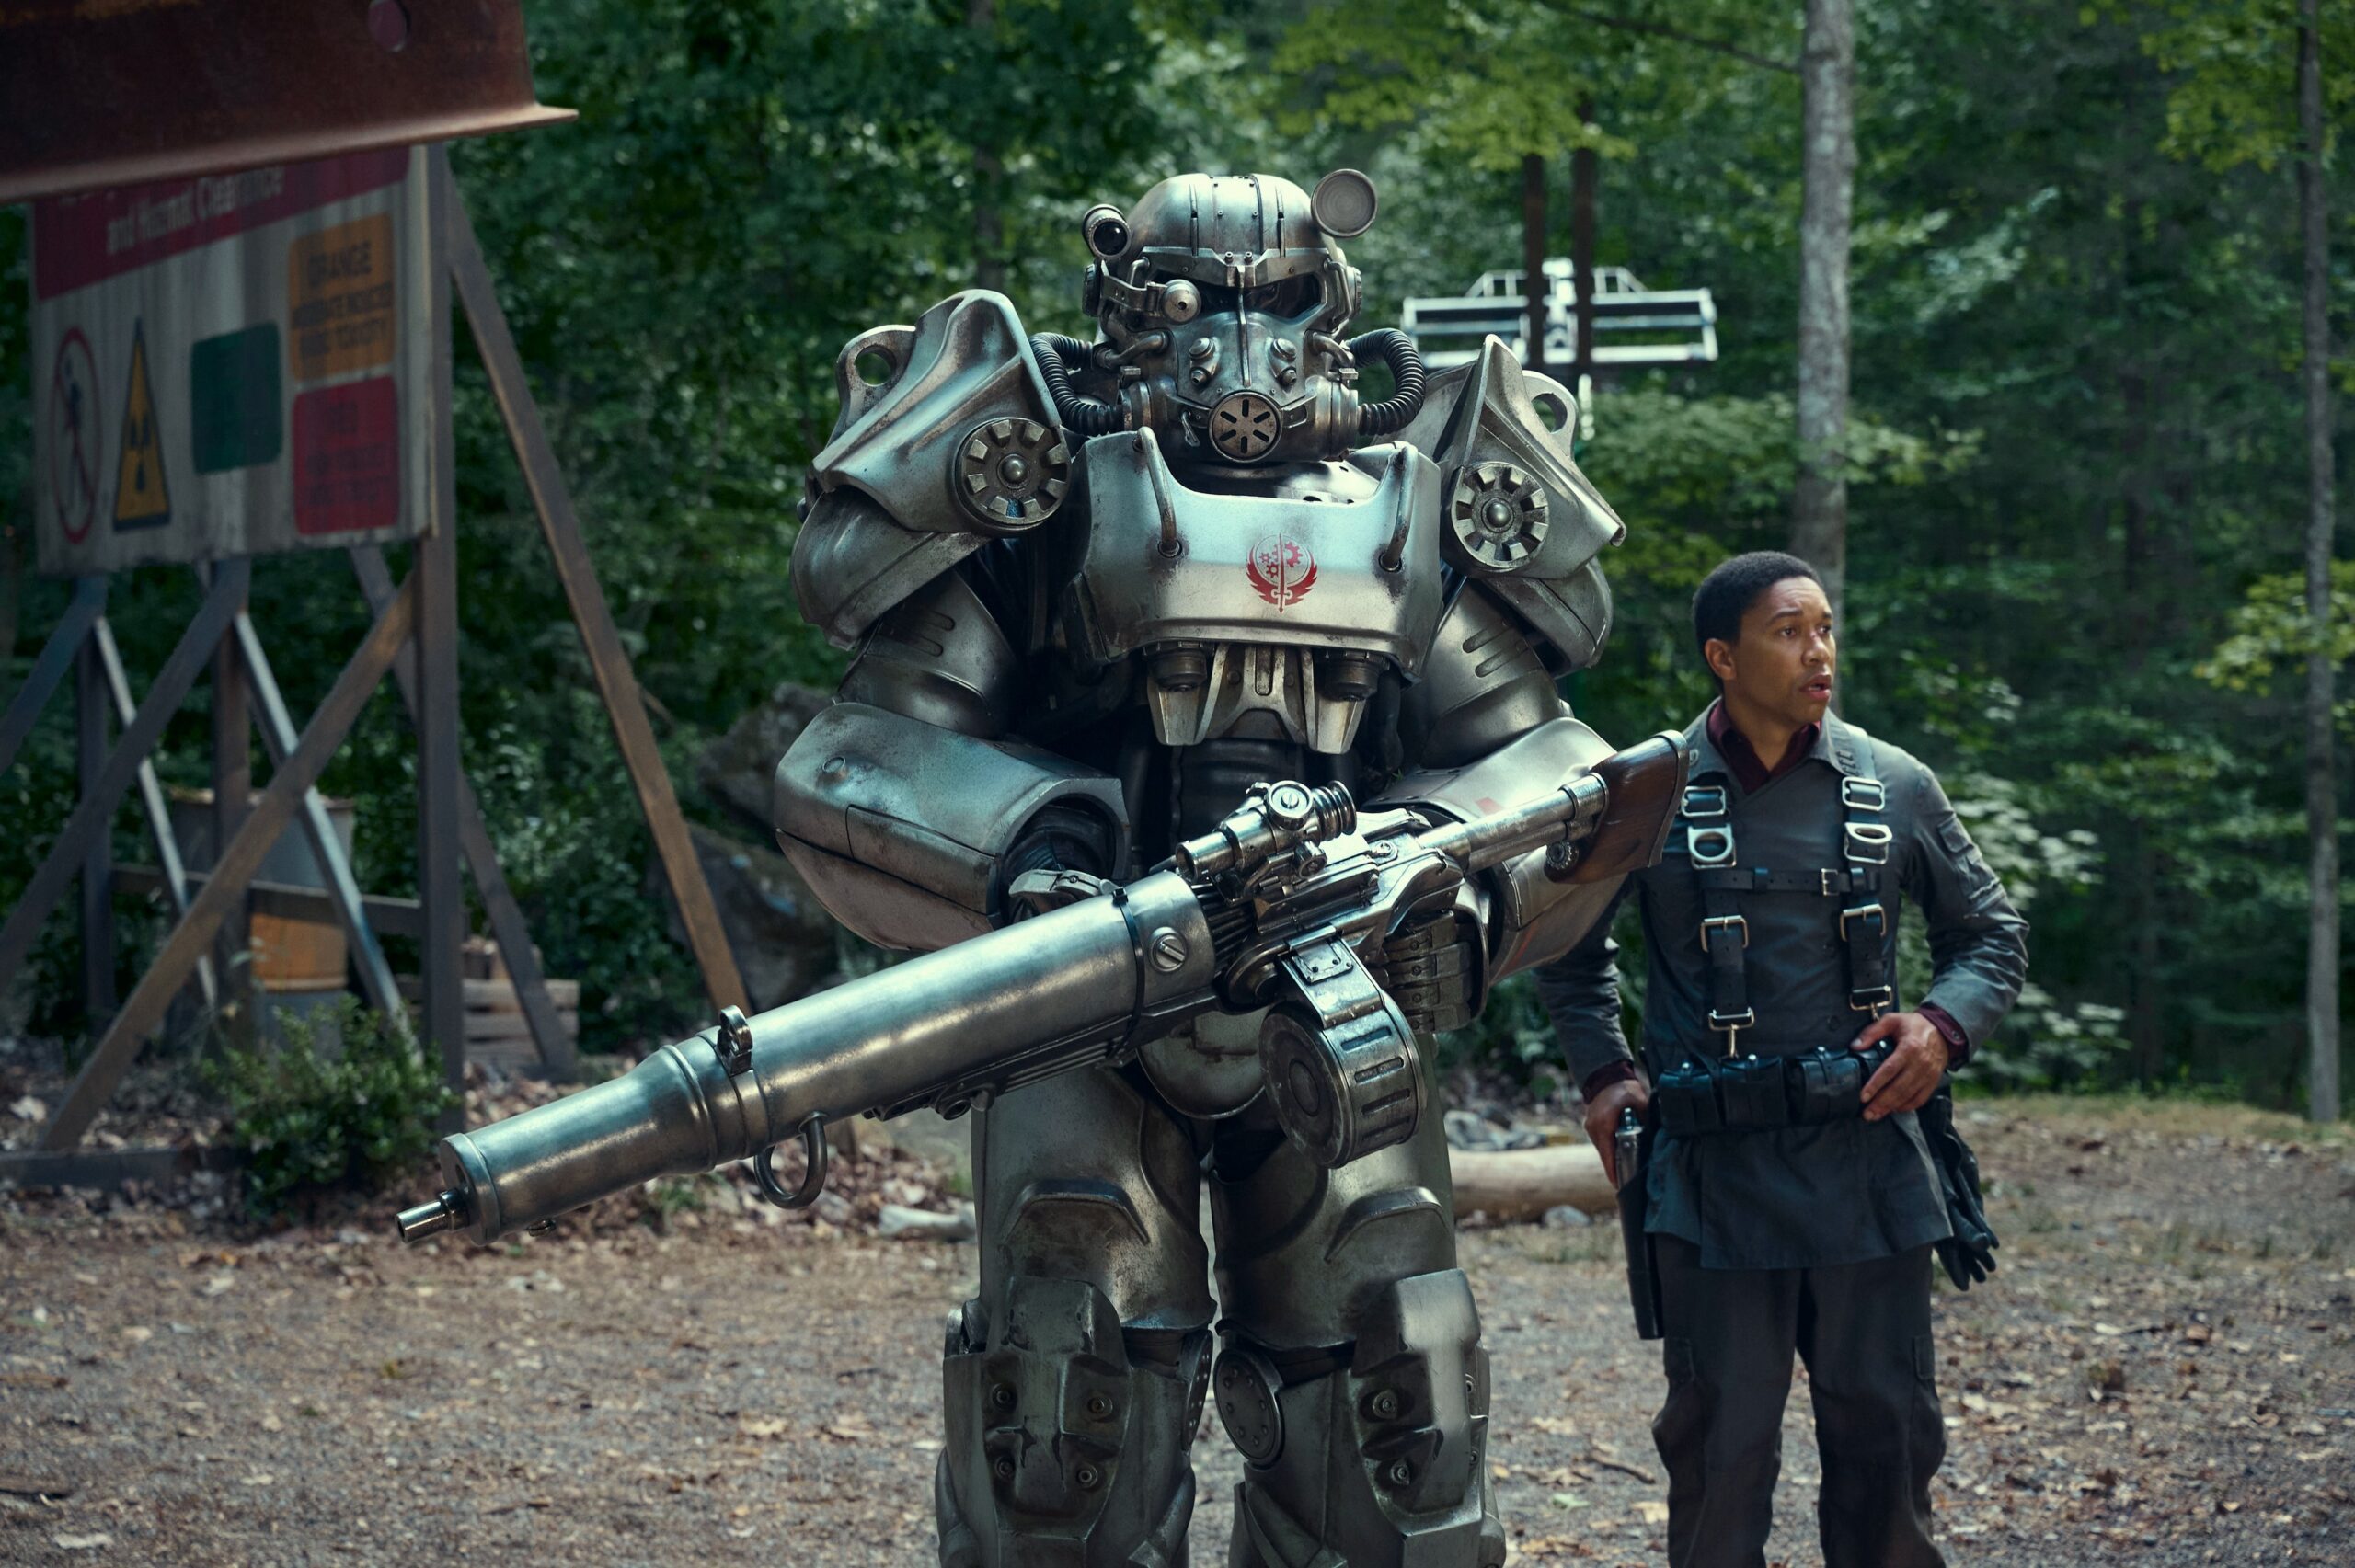 Postać w futurystycznym pancerzu z przypominającym minigun uzbrojeniem stoi obok mężczyzny w taktycznym ubiorze, w tle leśne otoczenie.